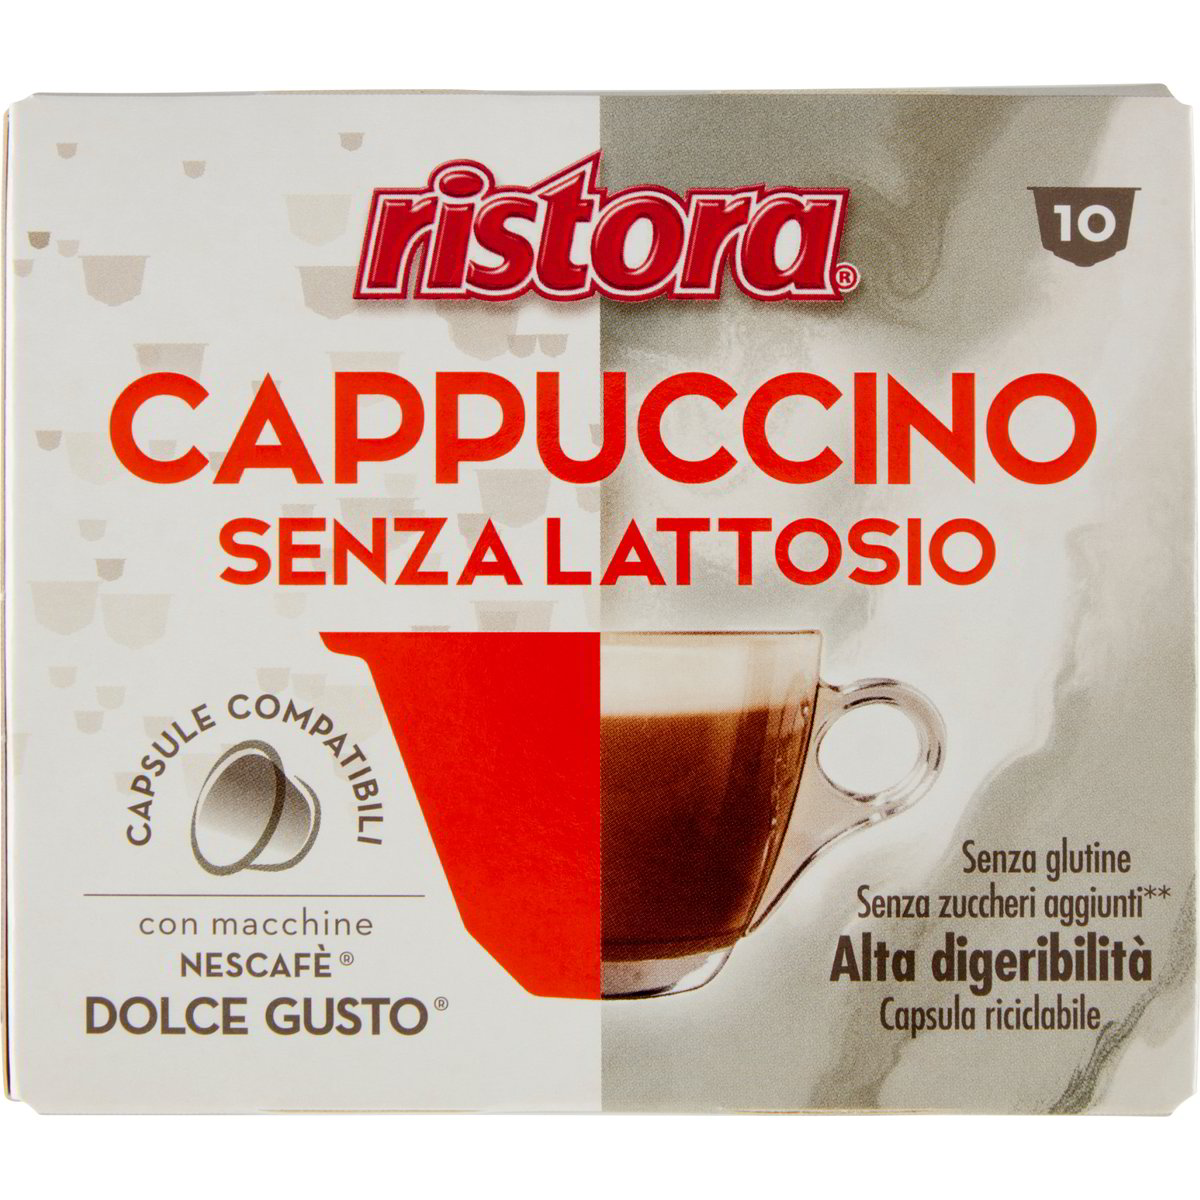 Capsule cappuccino x10 RISTORA - NESCAFÉ DOLCE GUSTO 110 G - Coop Shop